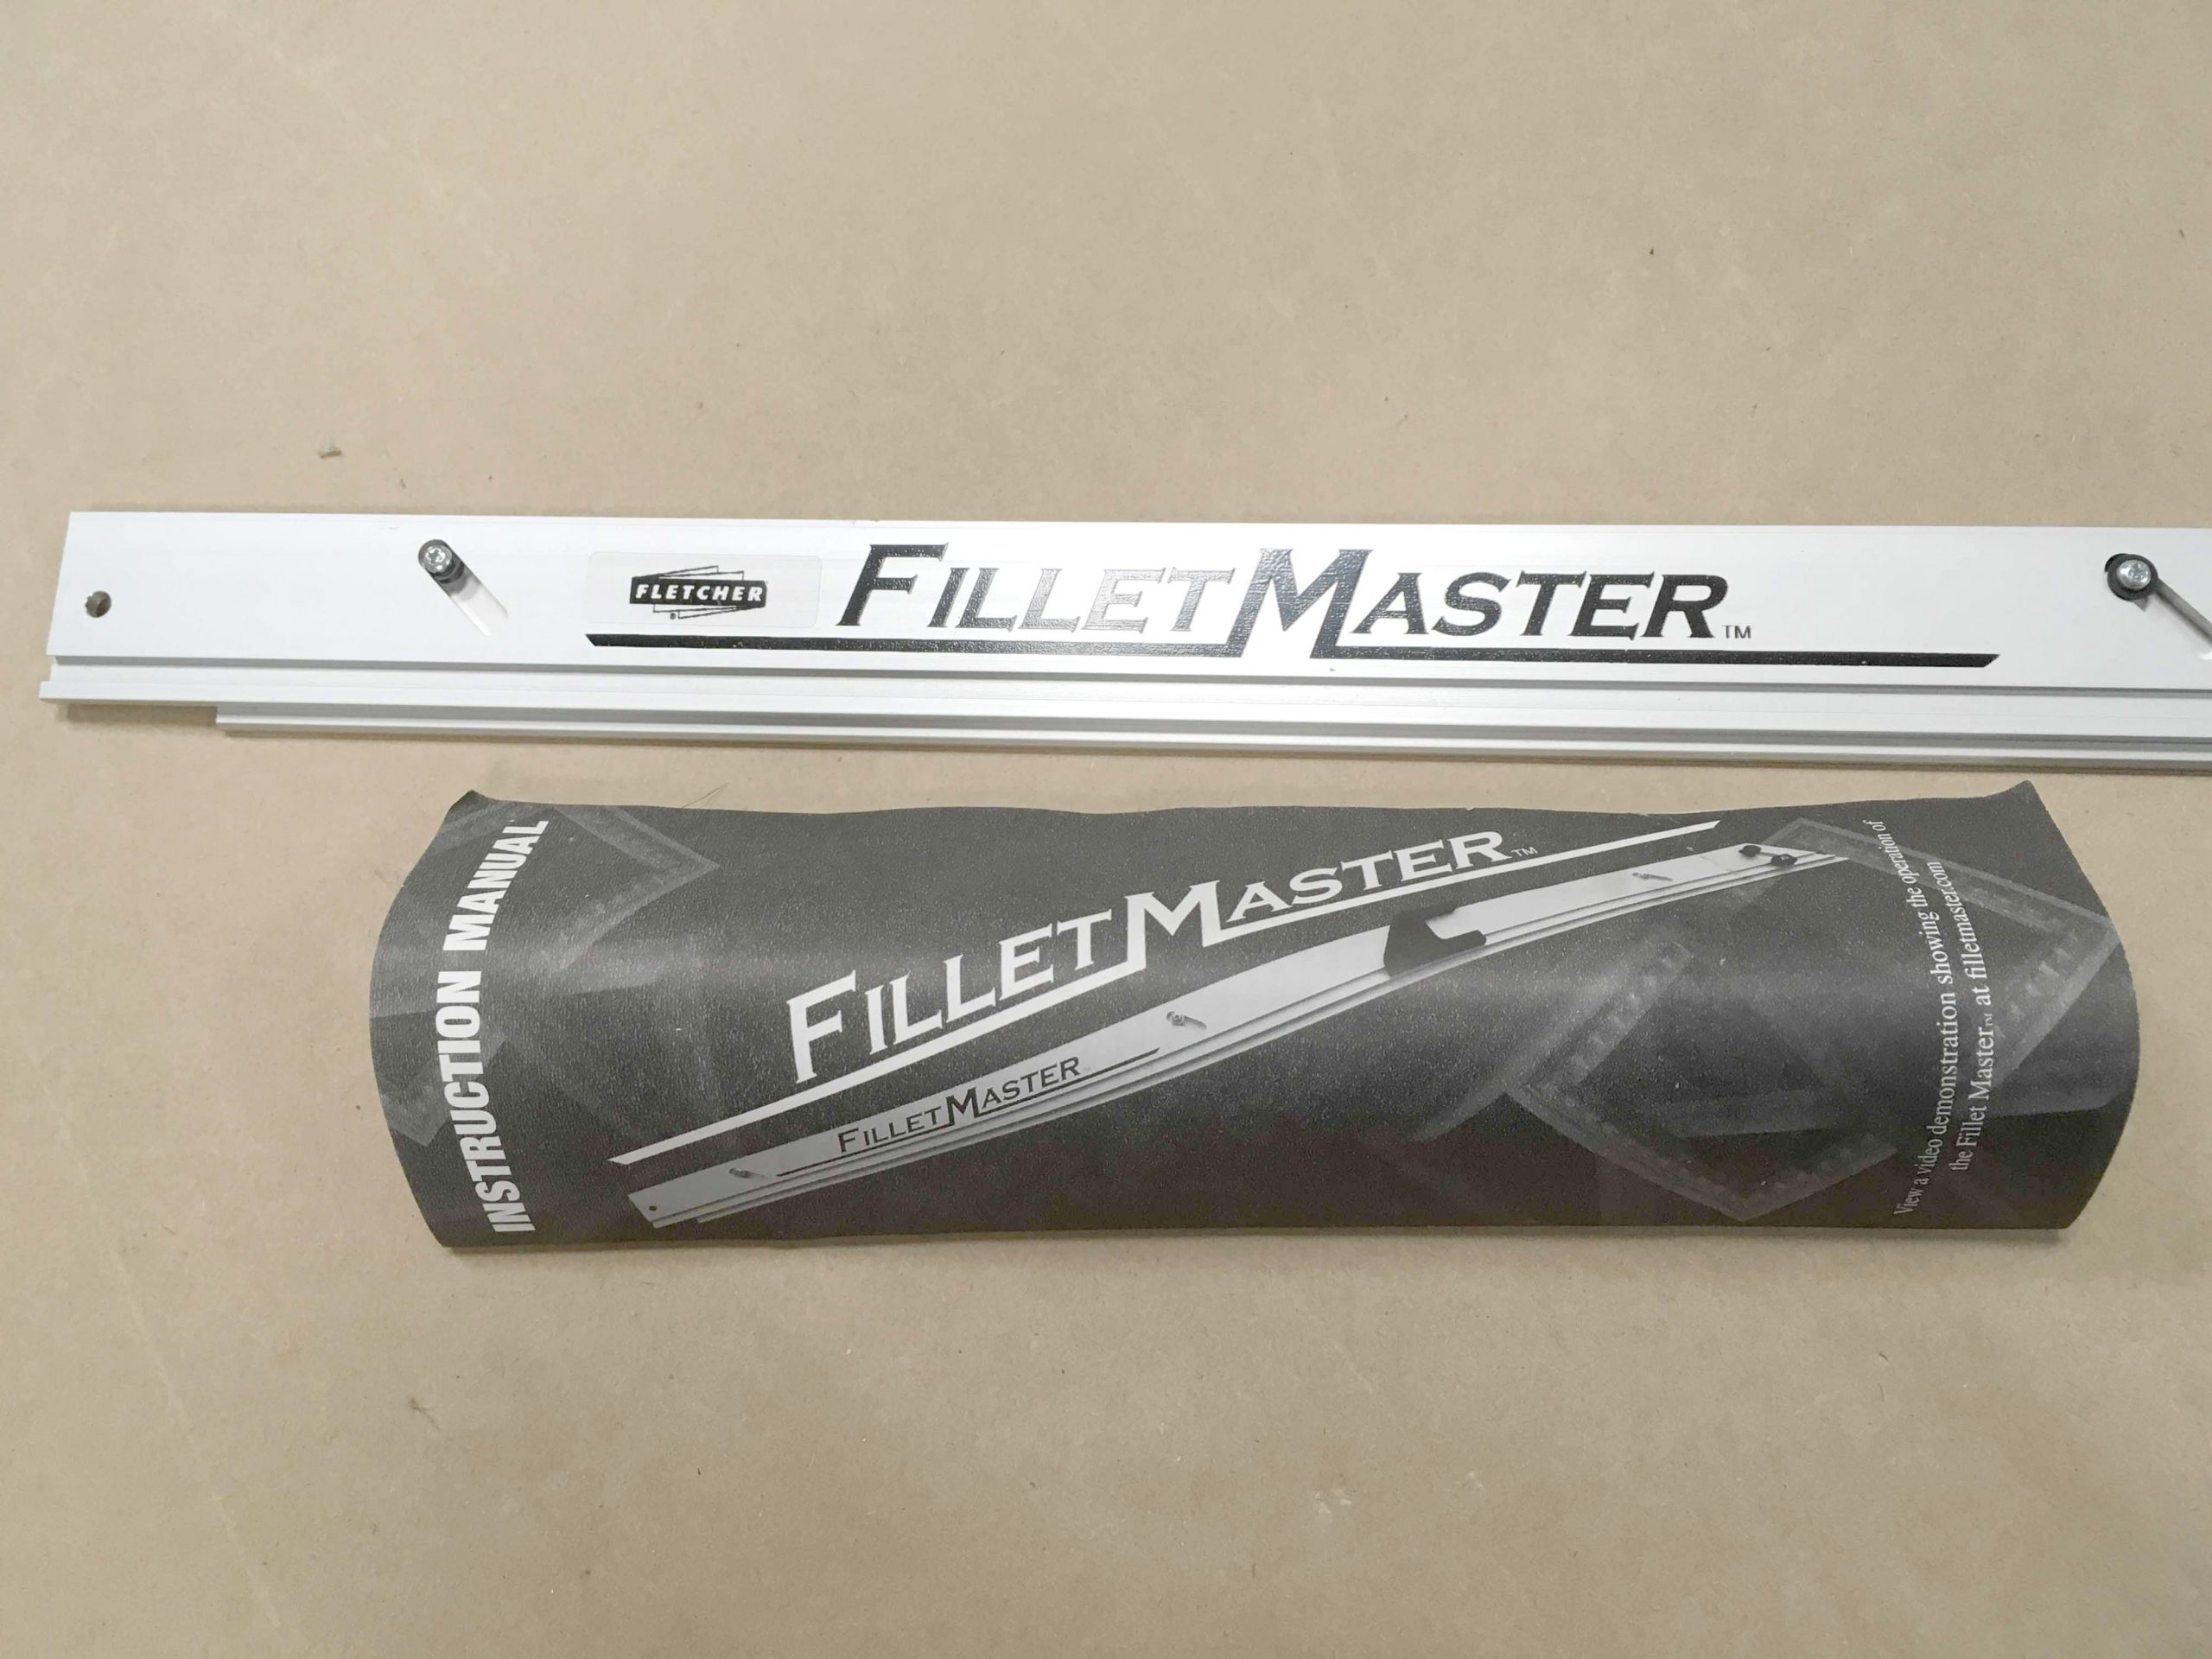 Fletcher – Frame Square Fillet Cutter / Chopper w/ Fillet Master